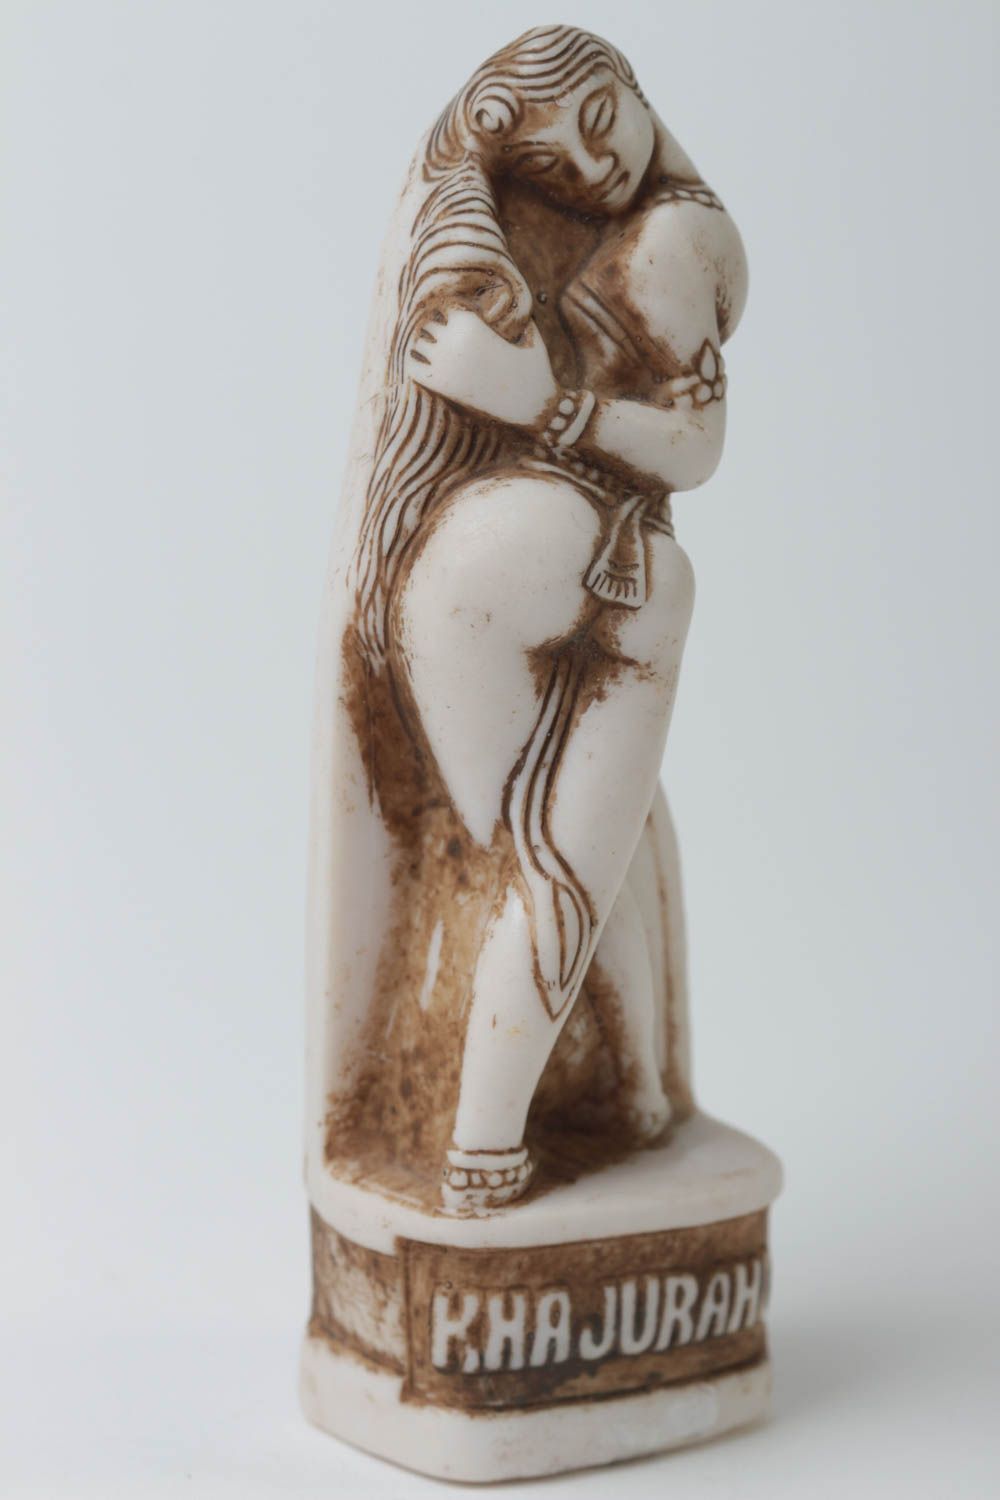 Авторская статуэтка из полимерной смолы сувенир ручной работы Каджурахо фото 2